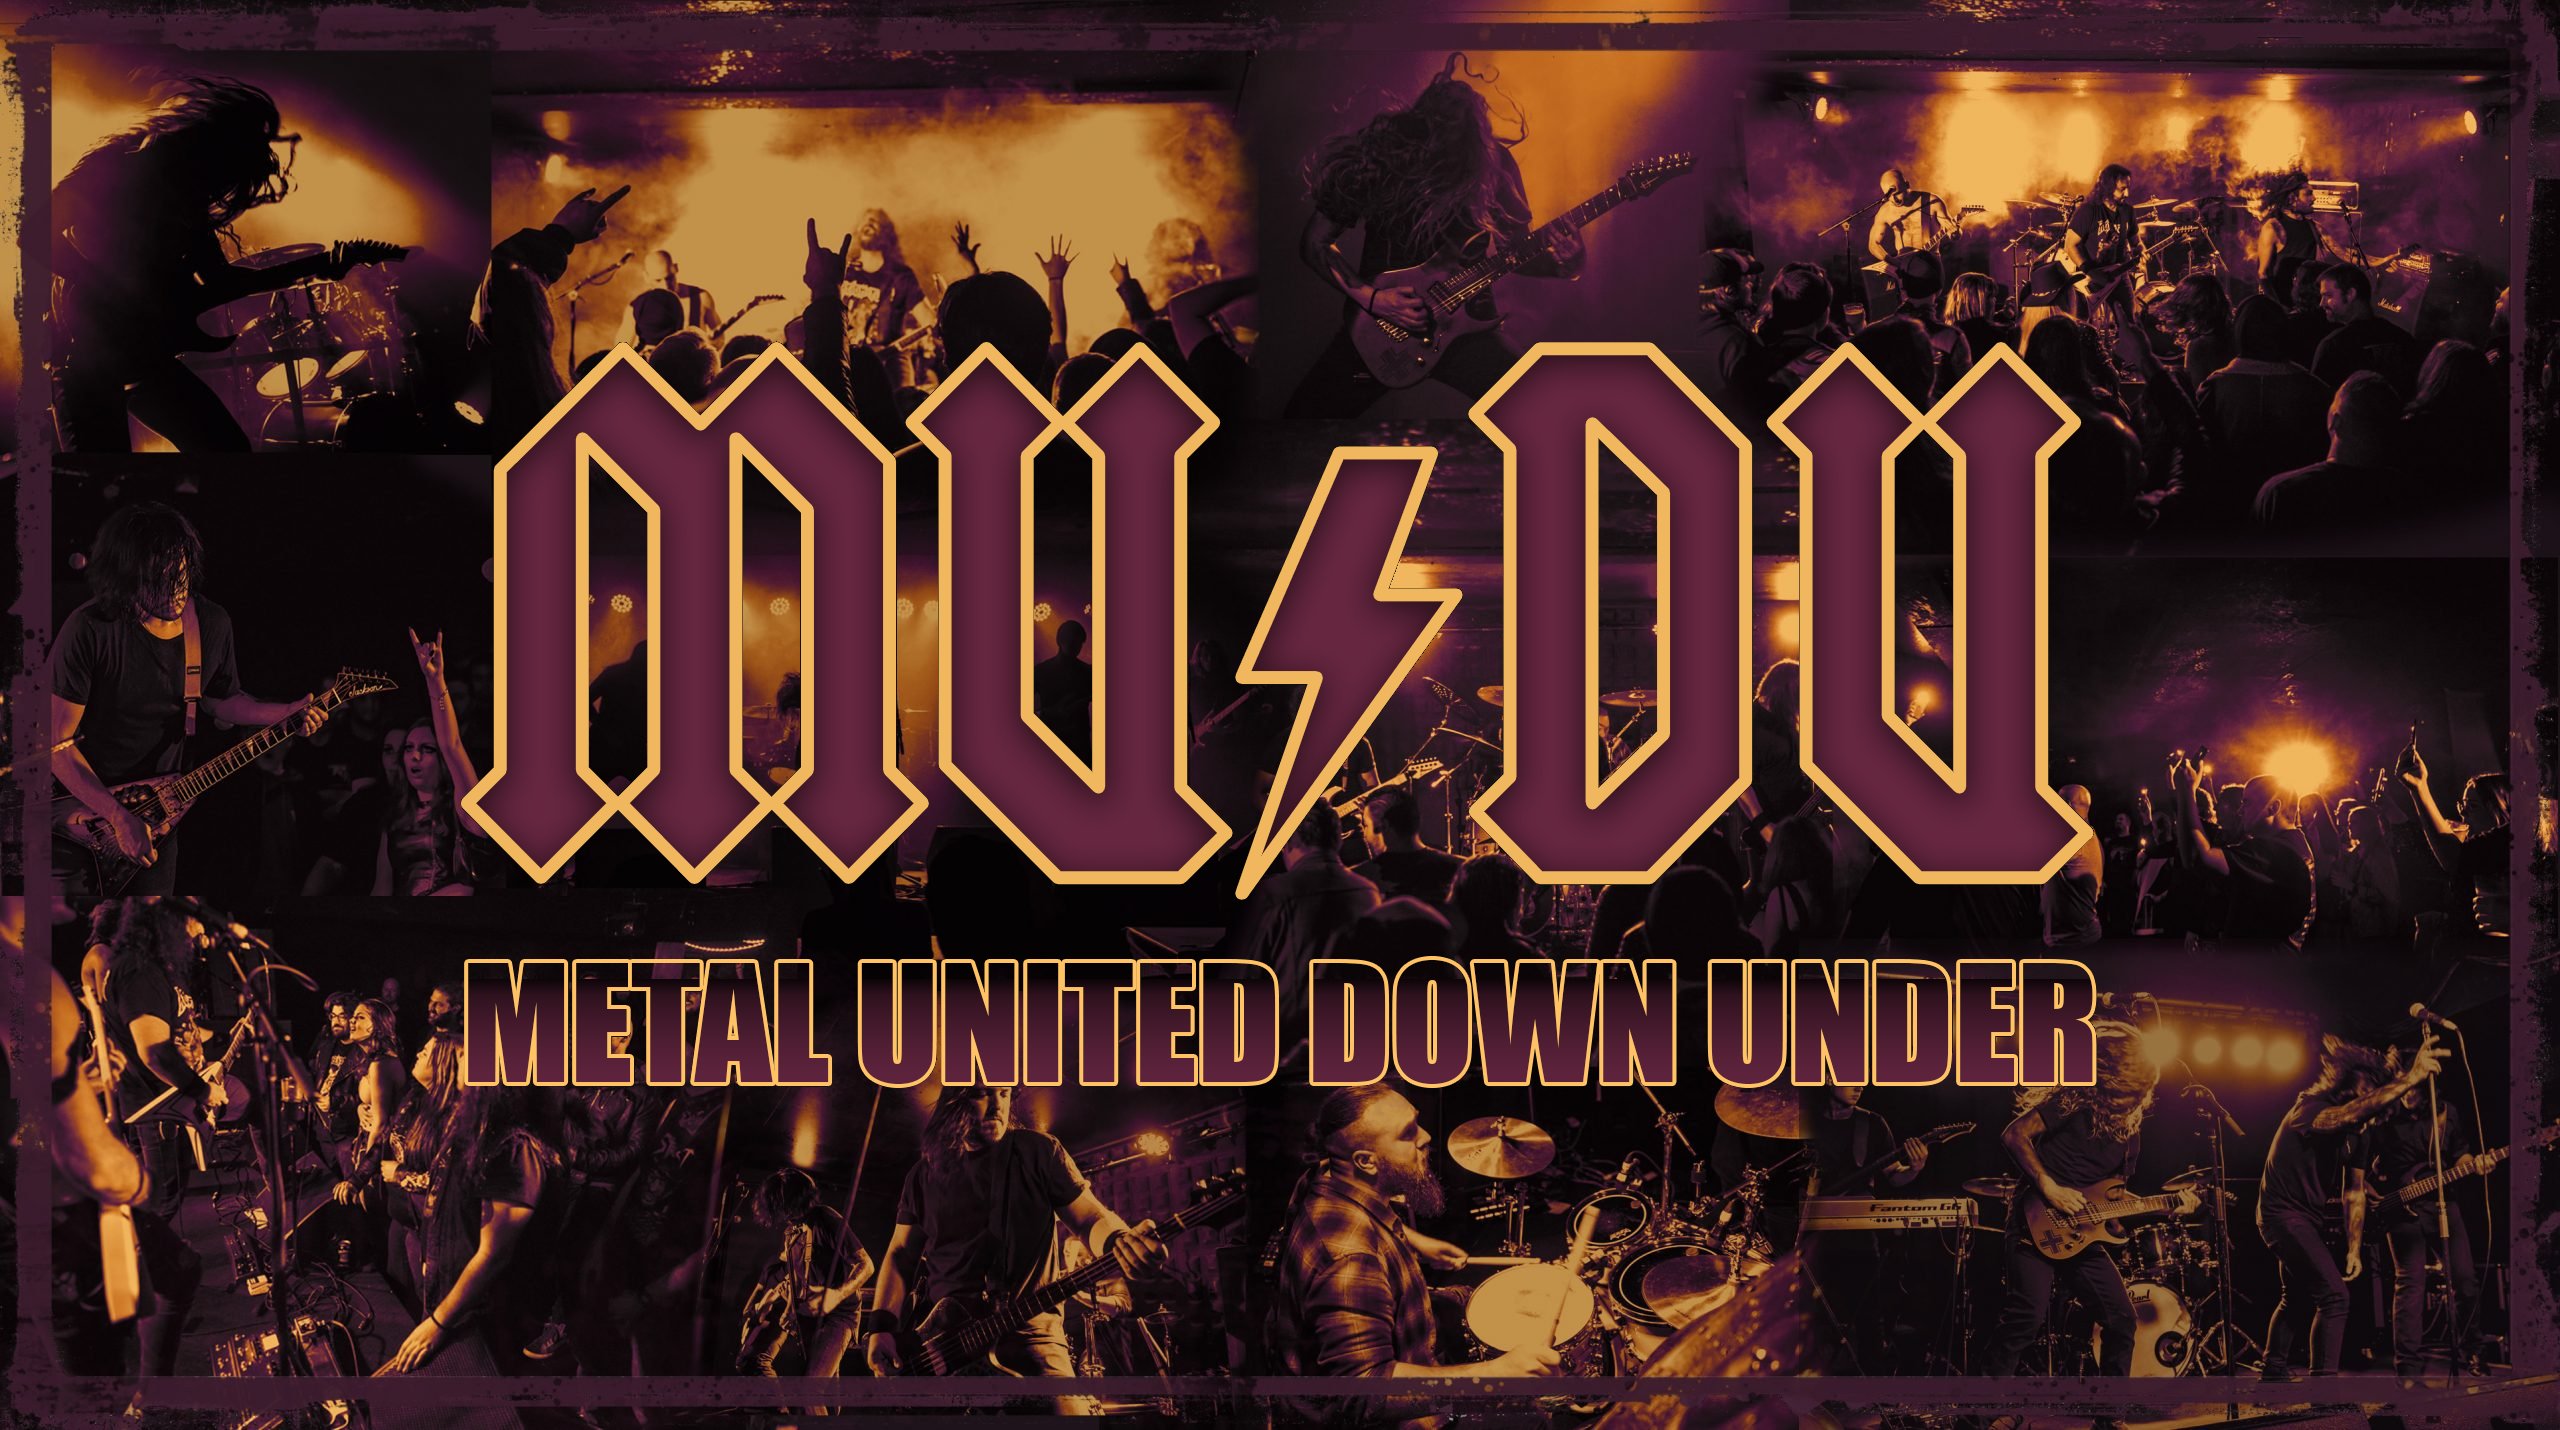 Metal United Down Under